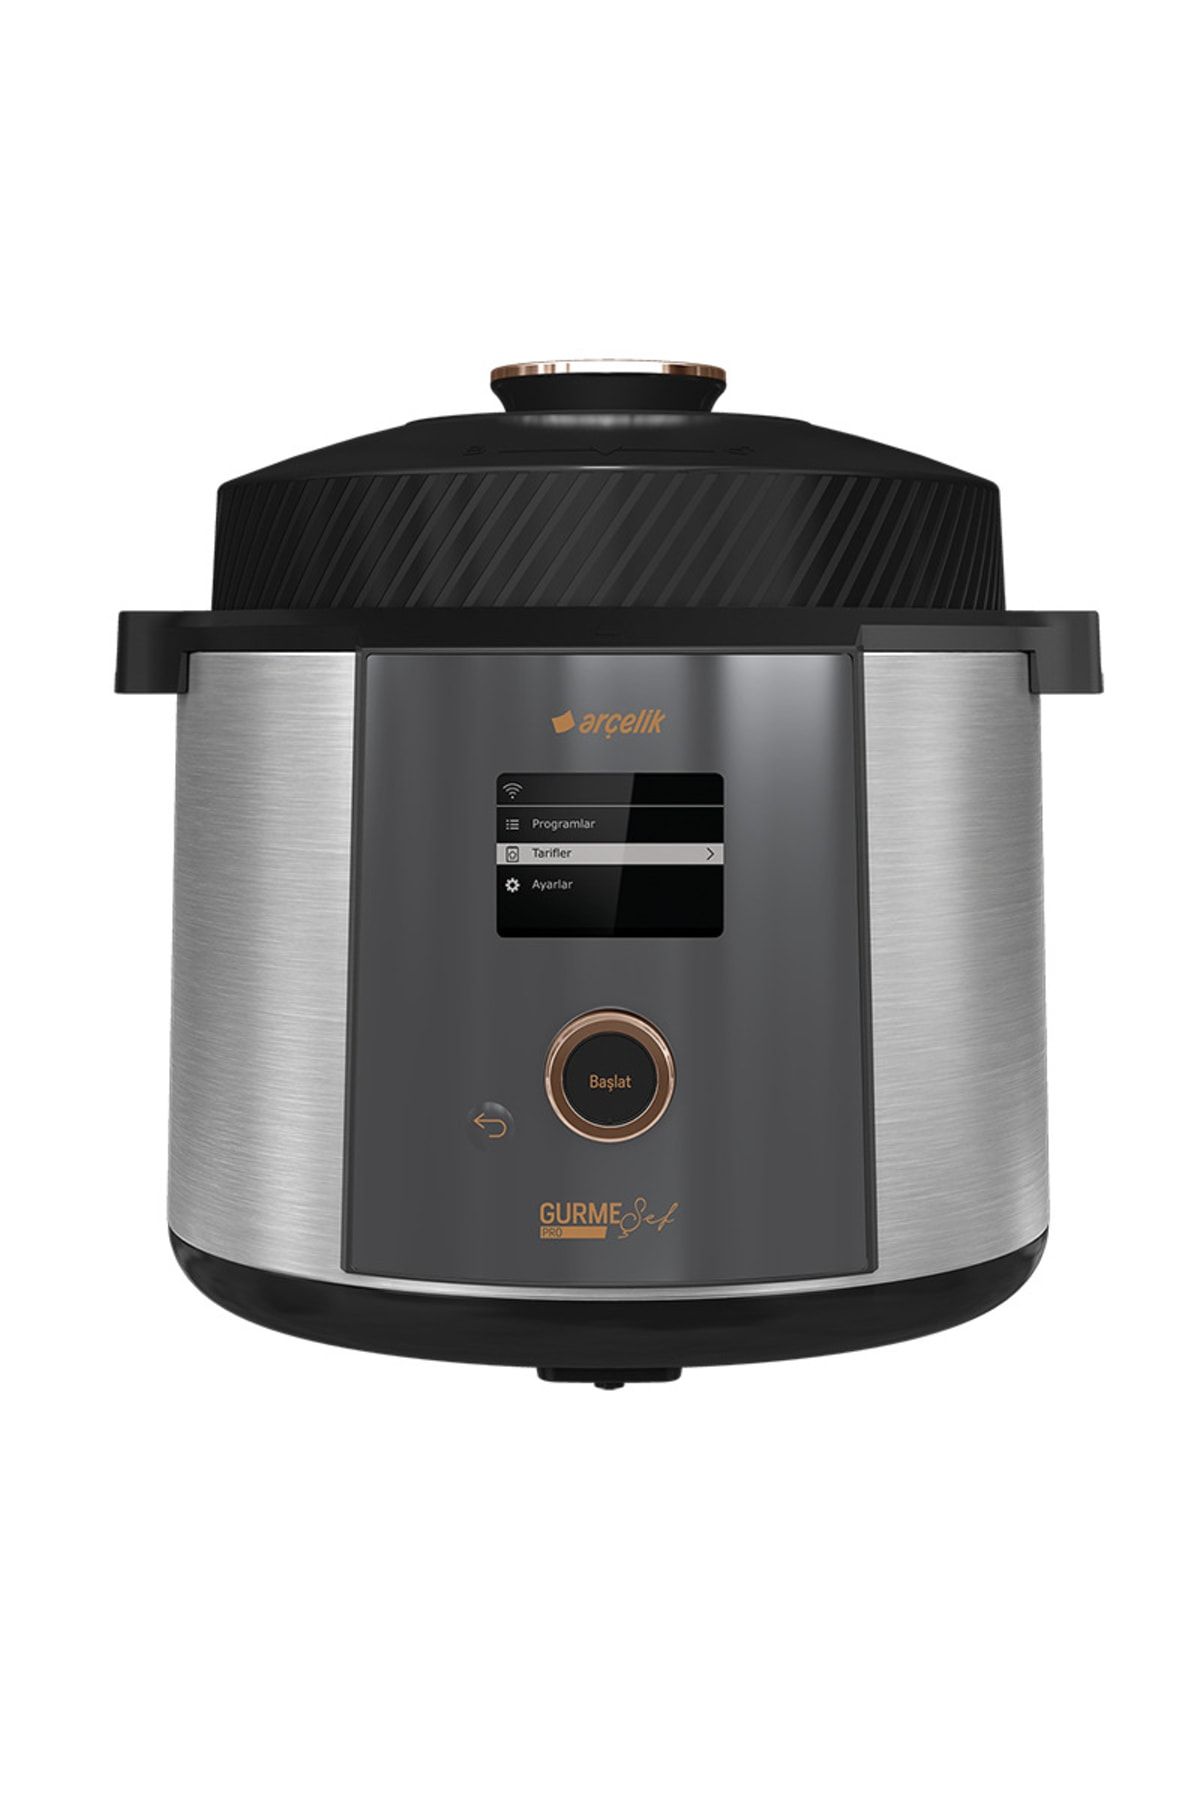 Arçelik Mc 6251 Gurme Şef™ Pro Çok Amaçlı Pişirici